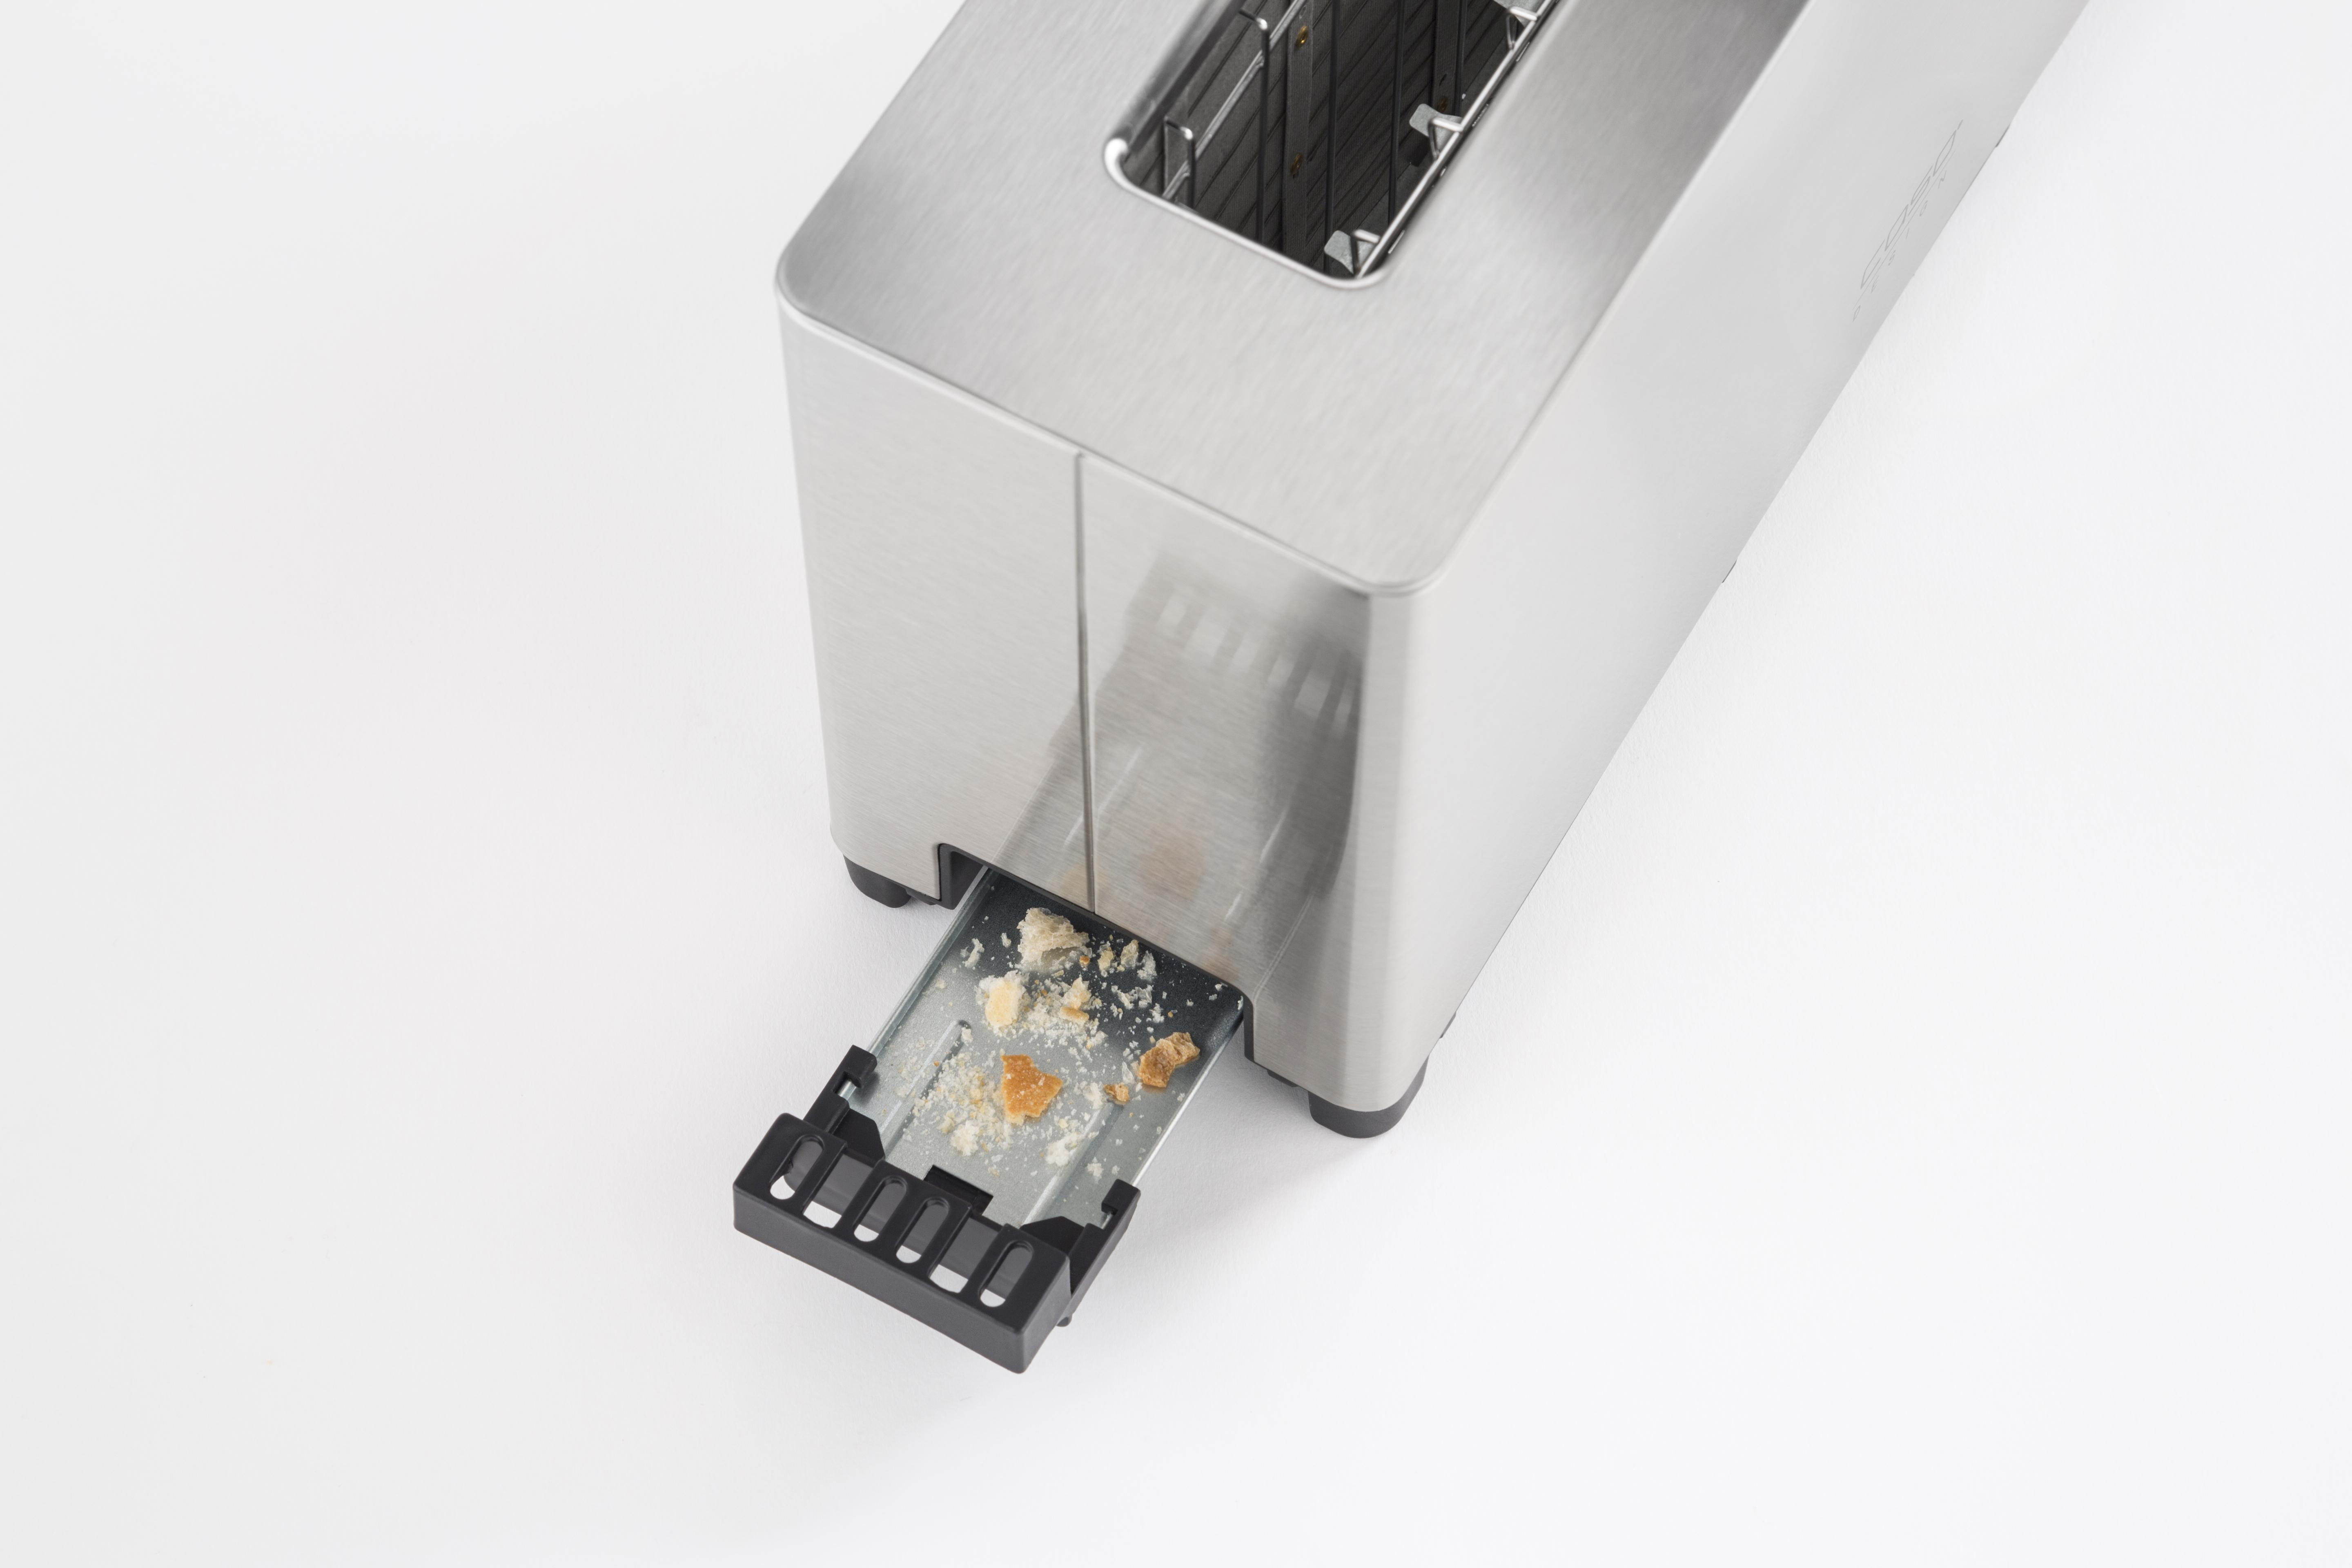 CASO Classico T2 Design Toaster Watt, Schlitze: (1050 1) Silber